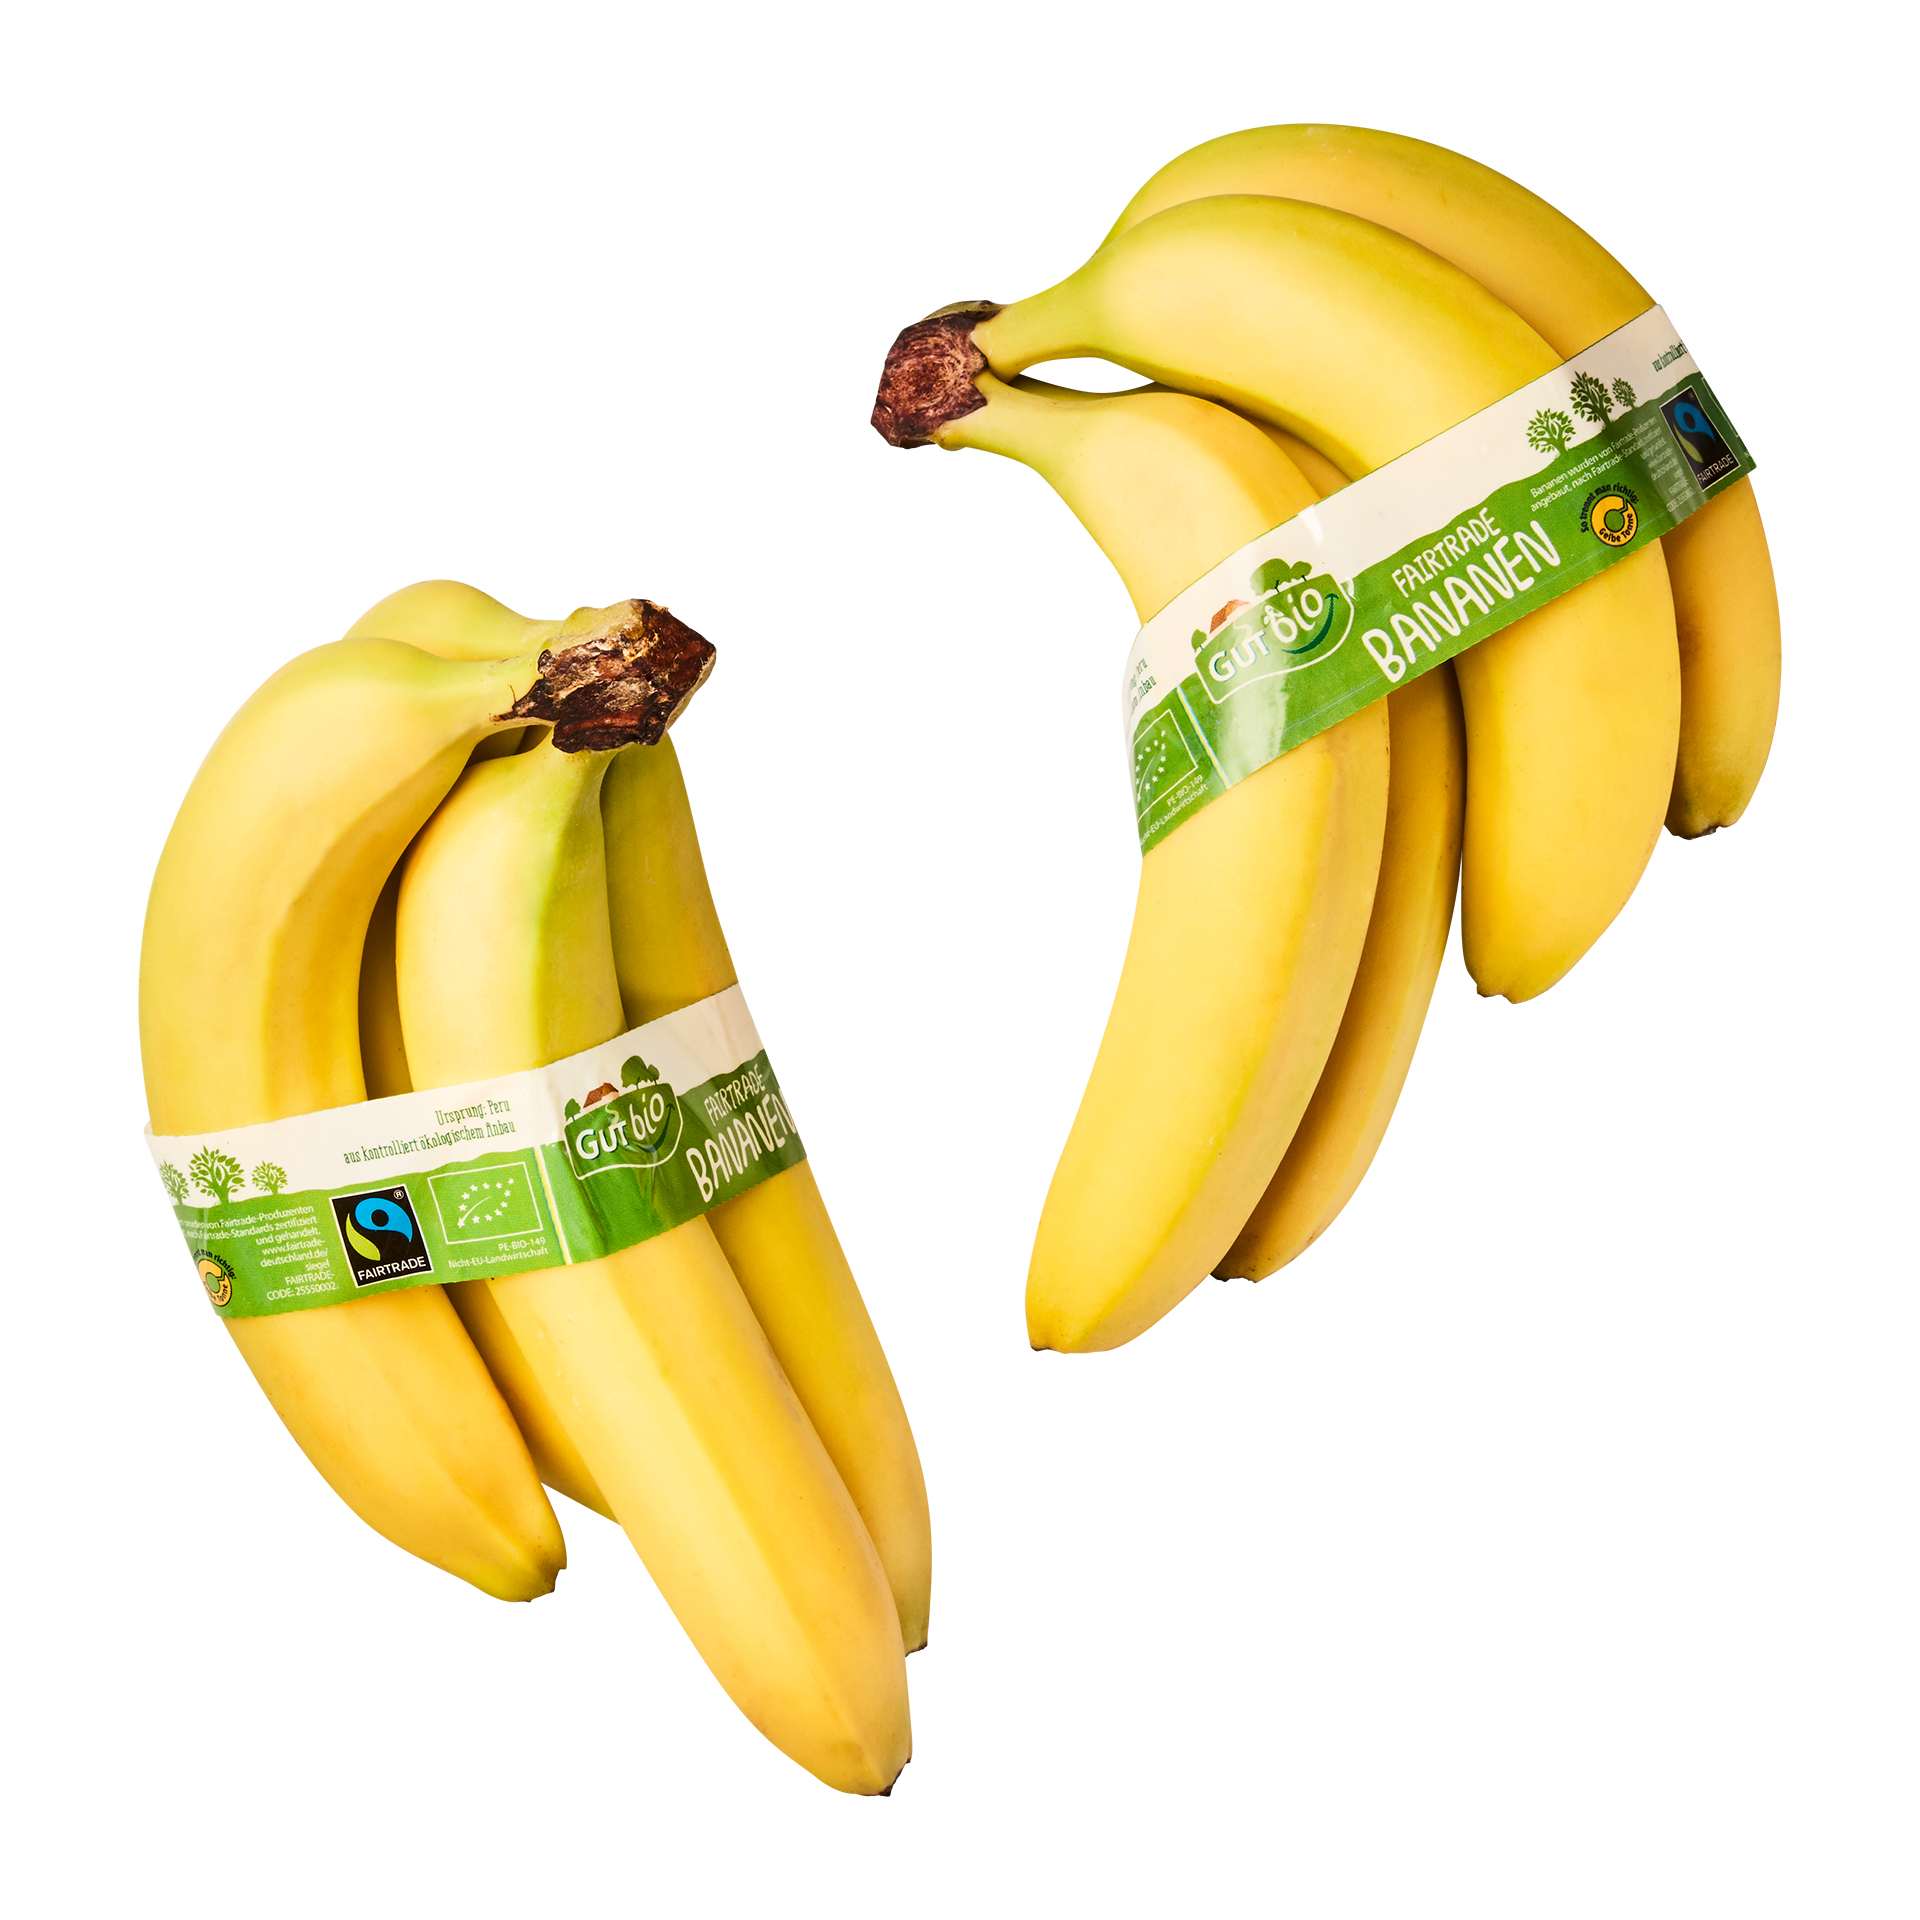 BIO GUT Fairtrade günstig Bio-Bananen, Nord ALDI bei